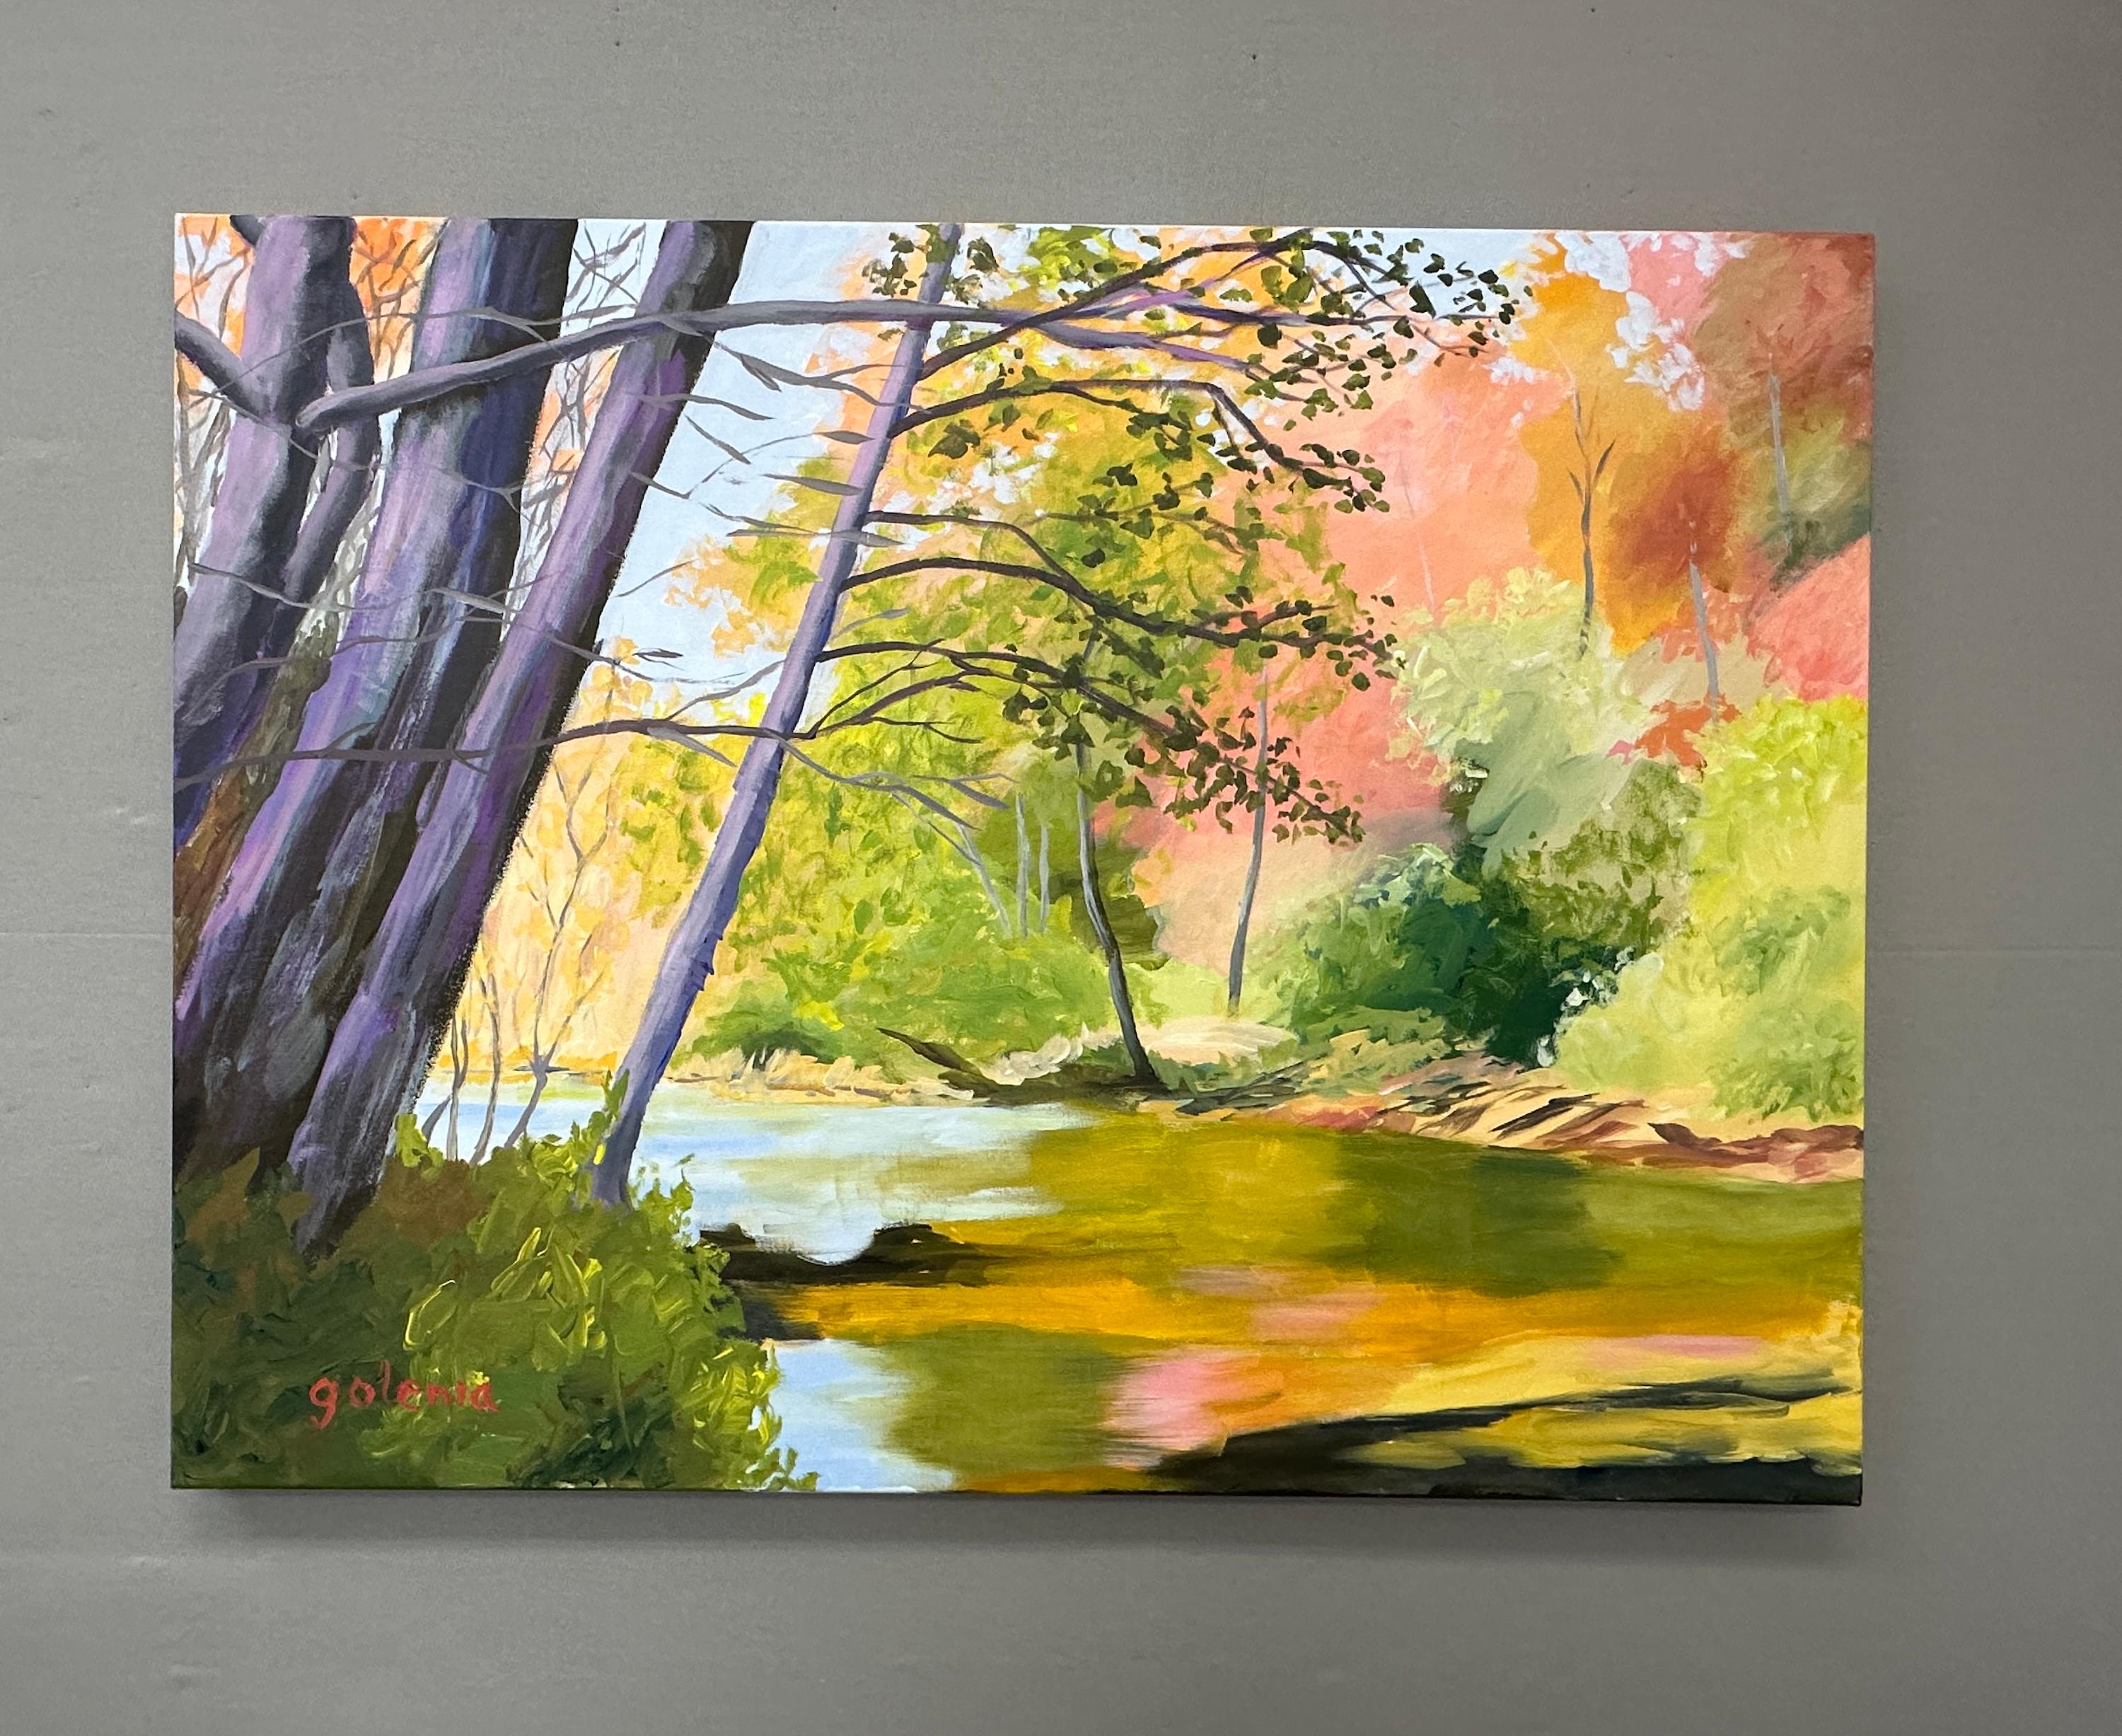 <p>Kommentare des Künstlers<br>Das Sonnenlicht am frühen Morgen bringt die sanften Farben des Herbstes zur Geltung. Die Bäume am Flussufer werfen einen beruhigenden Schatten auf das Wasser, der ihre leuchtenden Farben widerspiegelt. Die Stille der